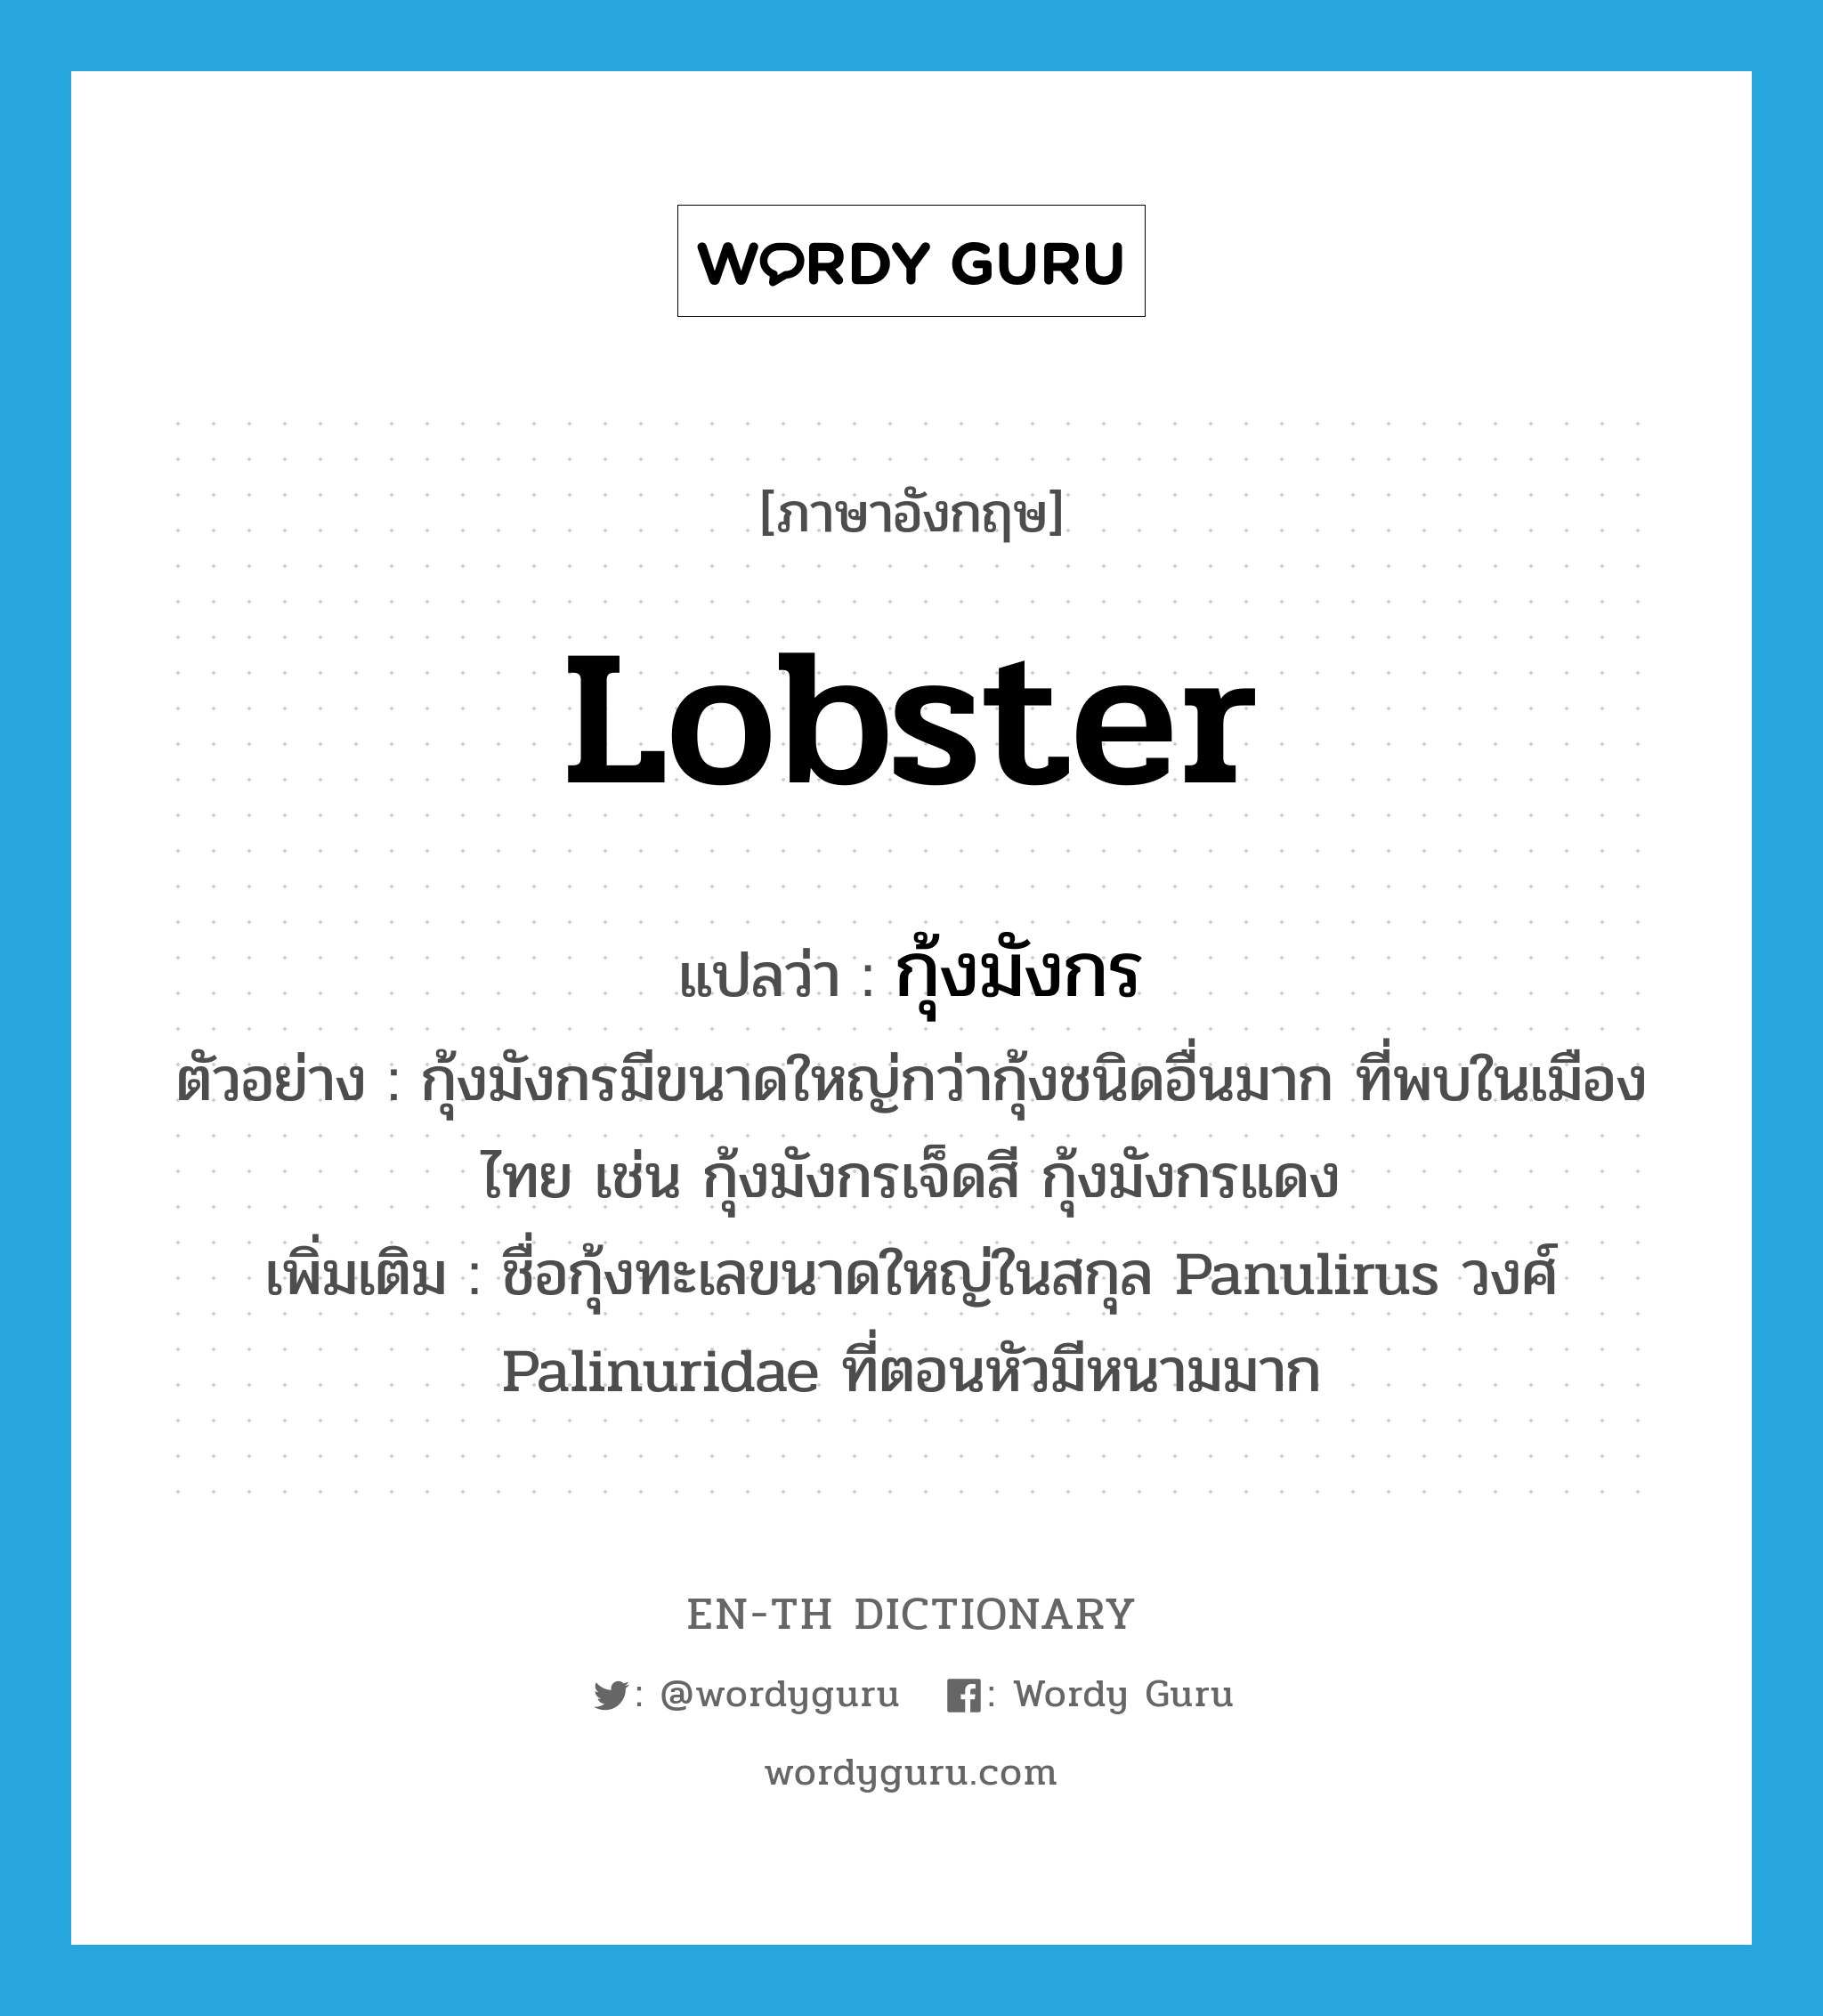 กุ้งมังกร ภาษาอังกฤษ?, คำศัพท์ภาษาอังกฤษ กุ้งมังกร แปลว่า lobster ประเภท N ตัวอย่าง กุ้งมังกรมีขนาดใหญ่กว่ากุ้งชนิดอื่นมาก ที่พบในเมืองไทย เช่น กุ้งมังกรเจ็ดสี กุ้งมังกรแดง เพิ่มเติม ชื่อกุ้งทะเลขนาดใหญ่ในสกุล Panulirus วงศ์ Palinuridae ที่ตอนหัวมีหนามมาก หมวด N